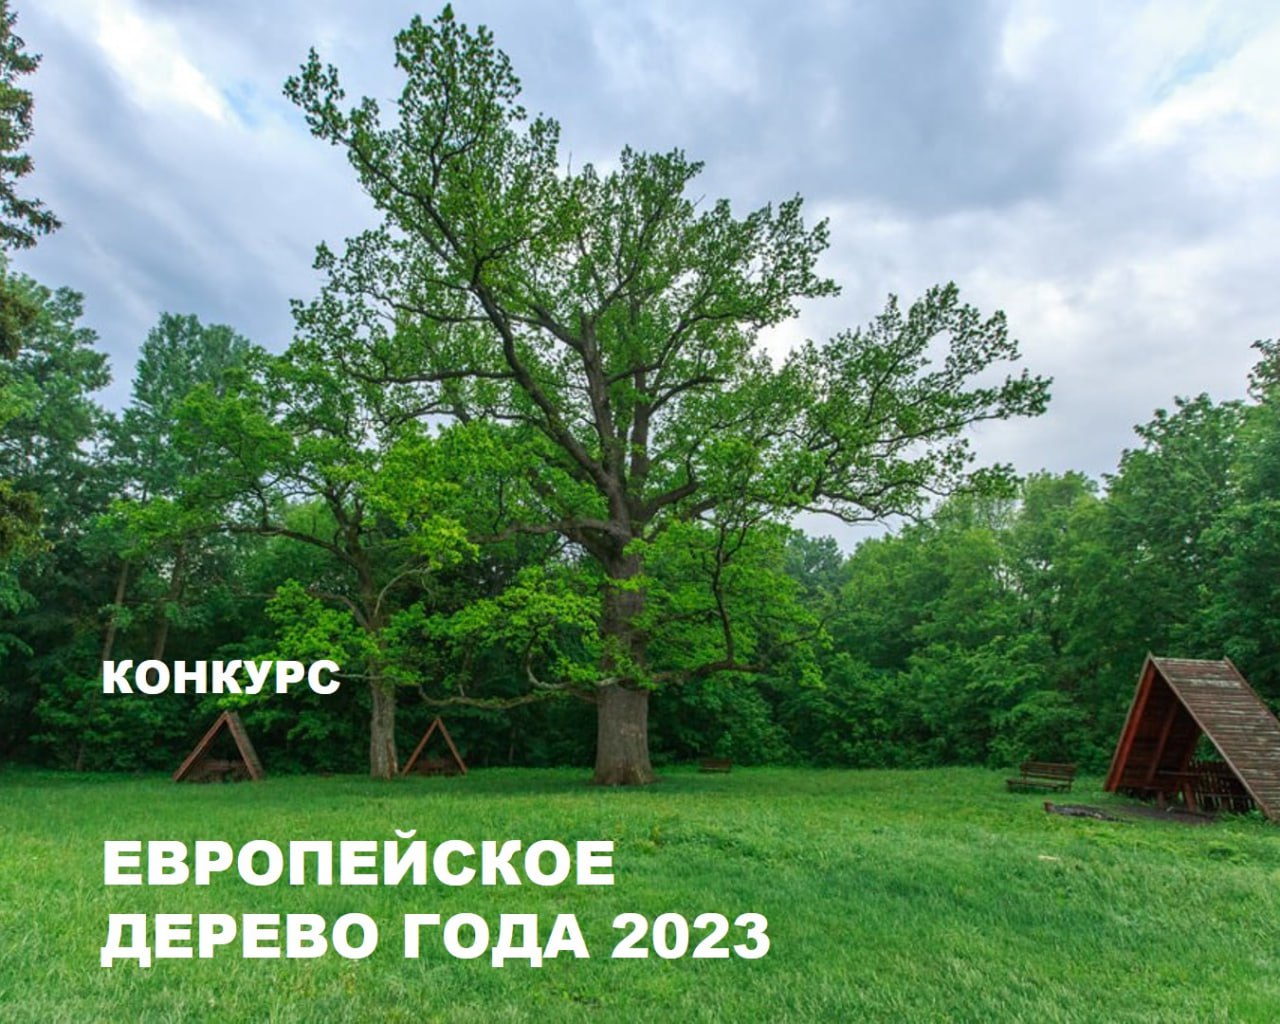 Приглашаем всех принять участие в национальном конкурсе «Российское дерево года 2023» и поддержать в голосовании дерево Белгородчины за звание «Европейское дерево года».